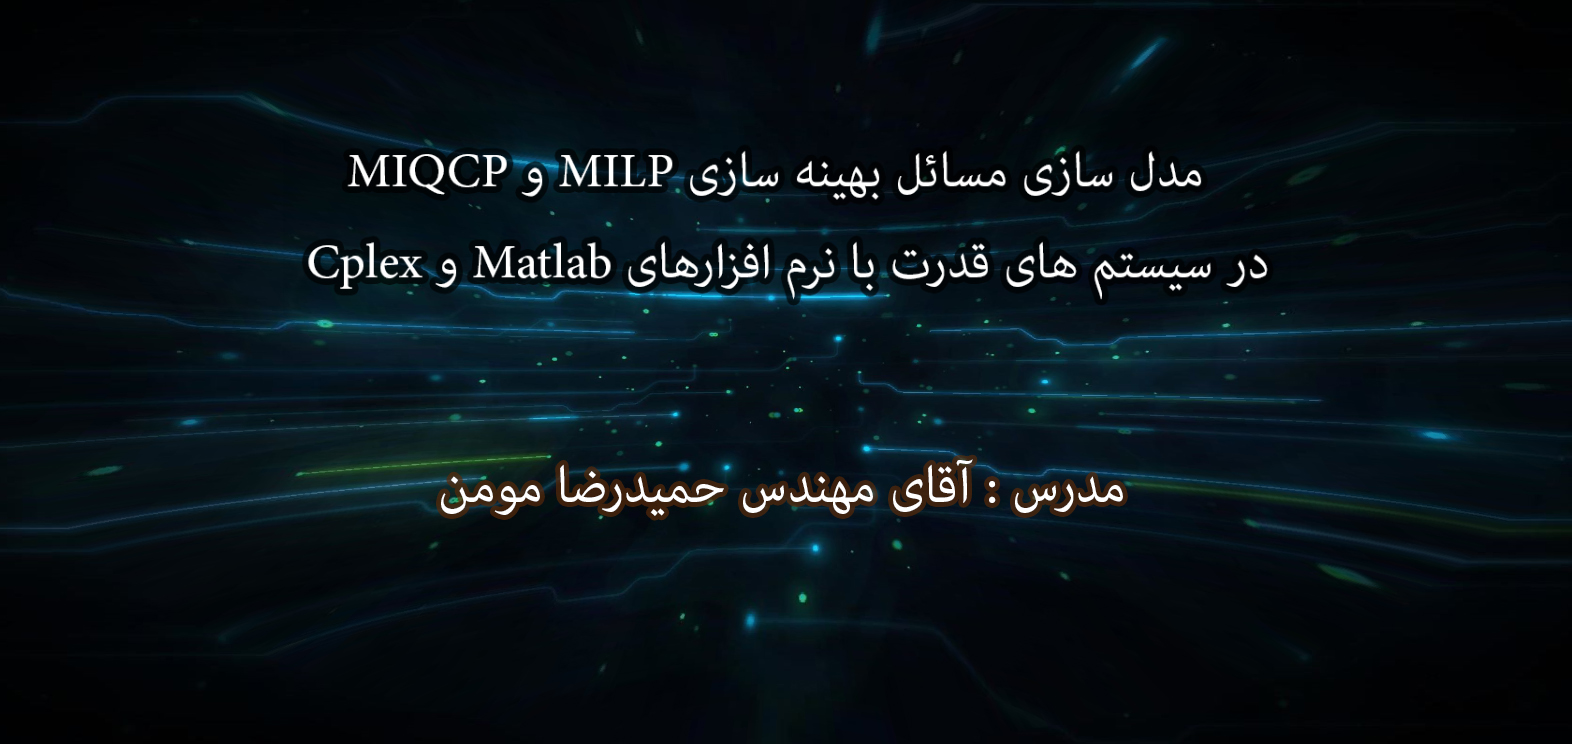 مدل سازی مسائل بهینه سازی milp و miqcp در سیستم قدرت با نرم افزار های Matlab و Cplex  - بخش چهارم : حل مسئله با استفاده از نرم افزارcplex